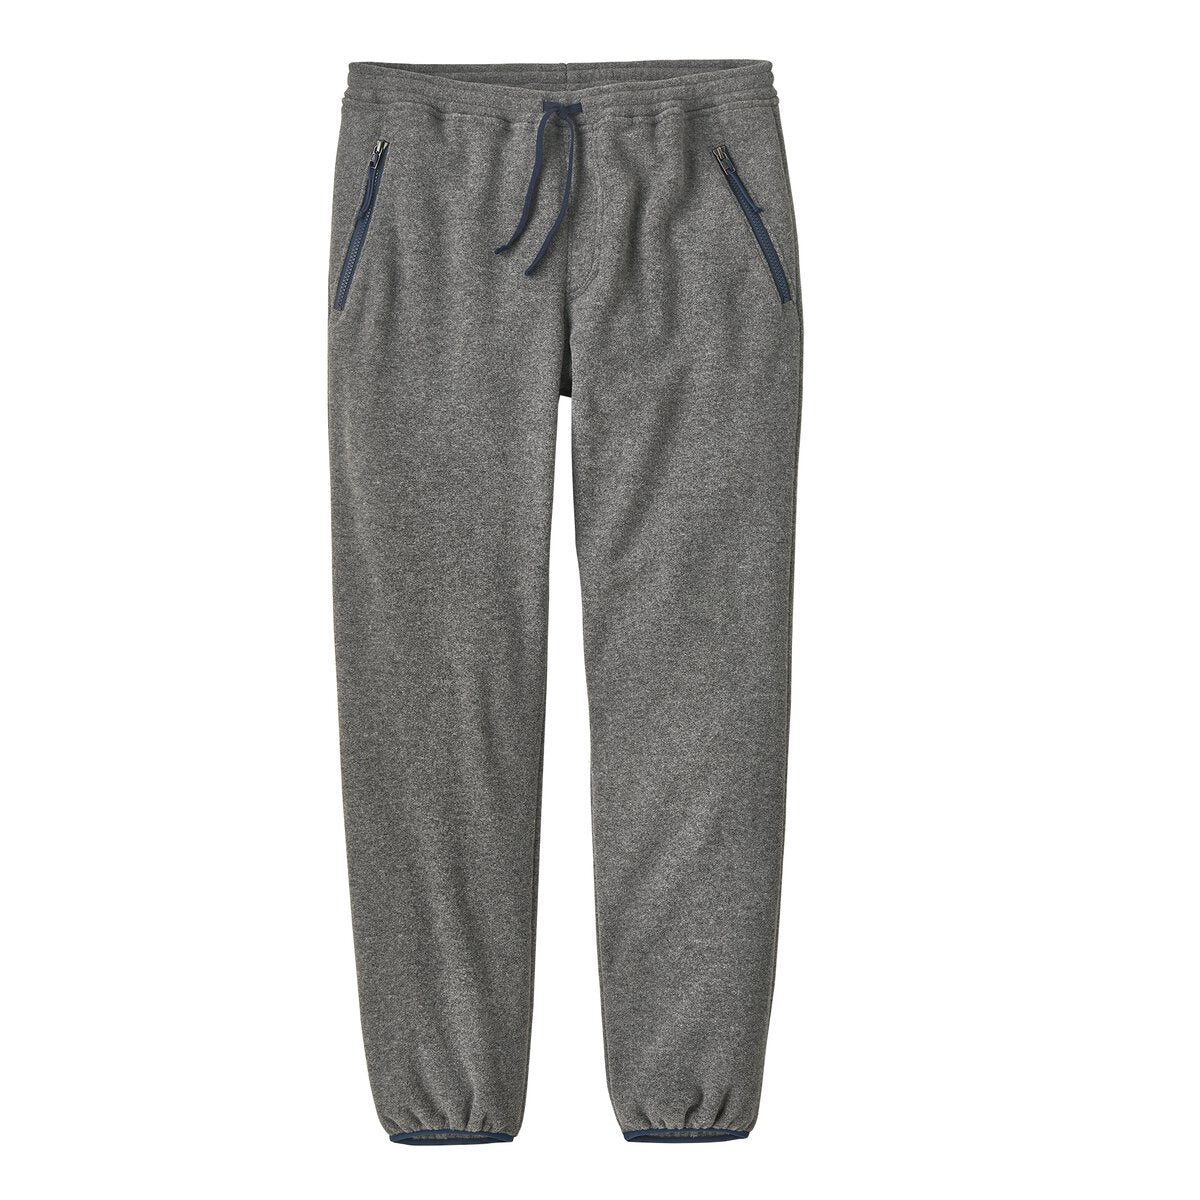 Synchilla® Fleece Pants